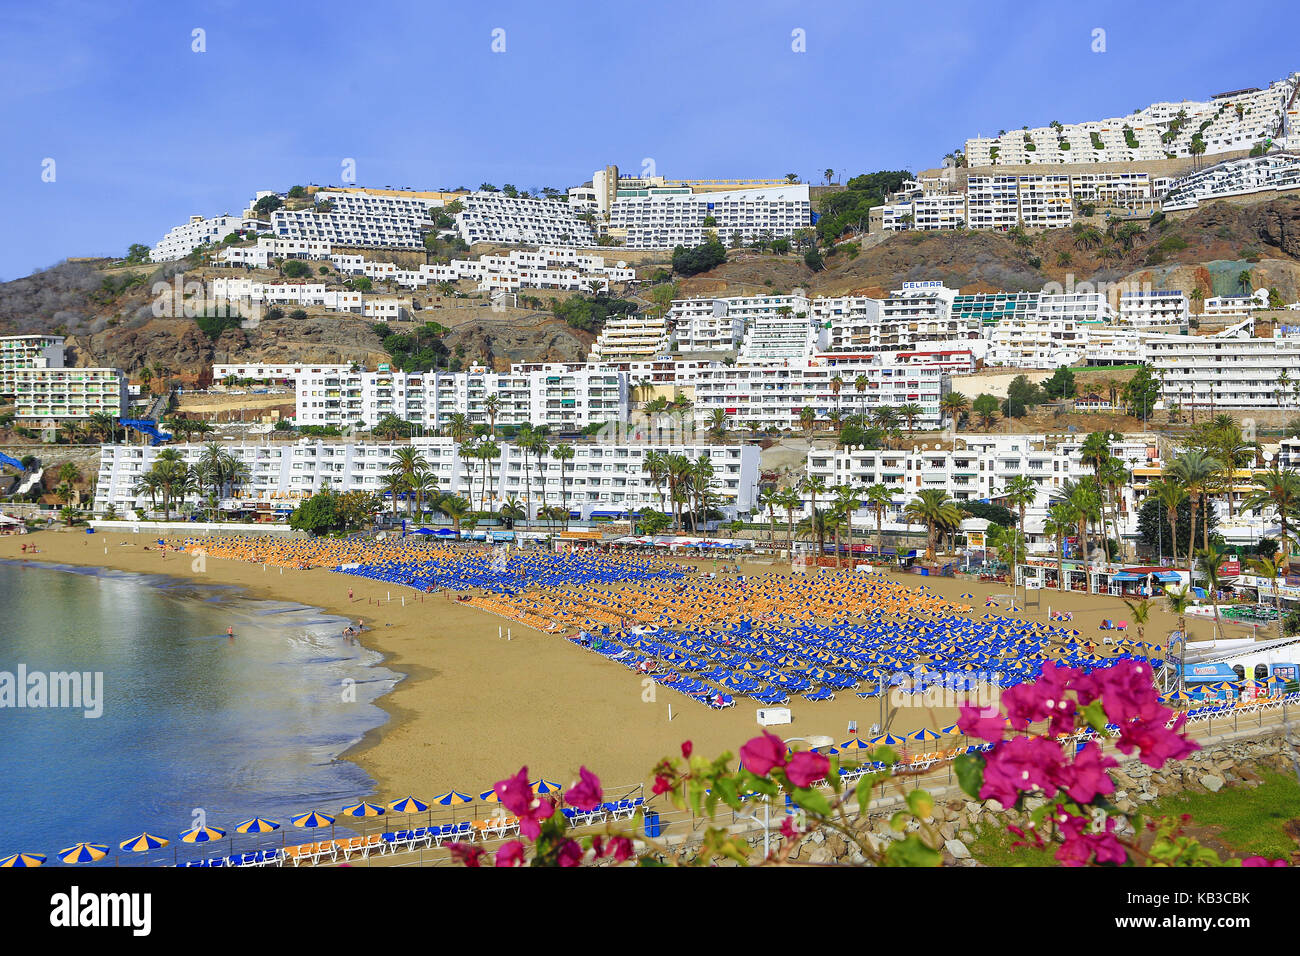 Spagna isole canarie Gran Canaria, puerto rico, spiaggia, sedie a sdraio, il turismo di massa, Foto Stock